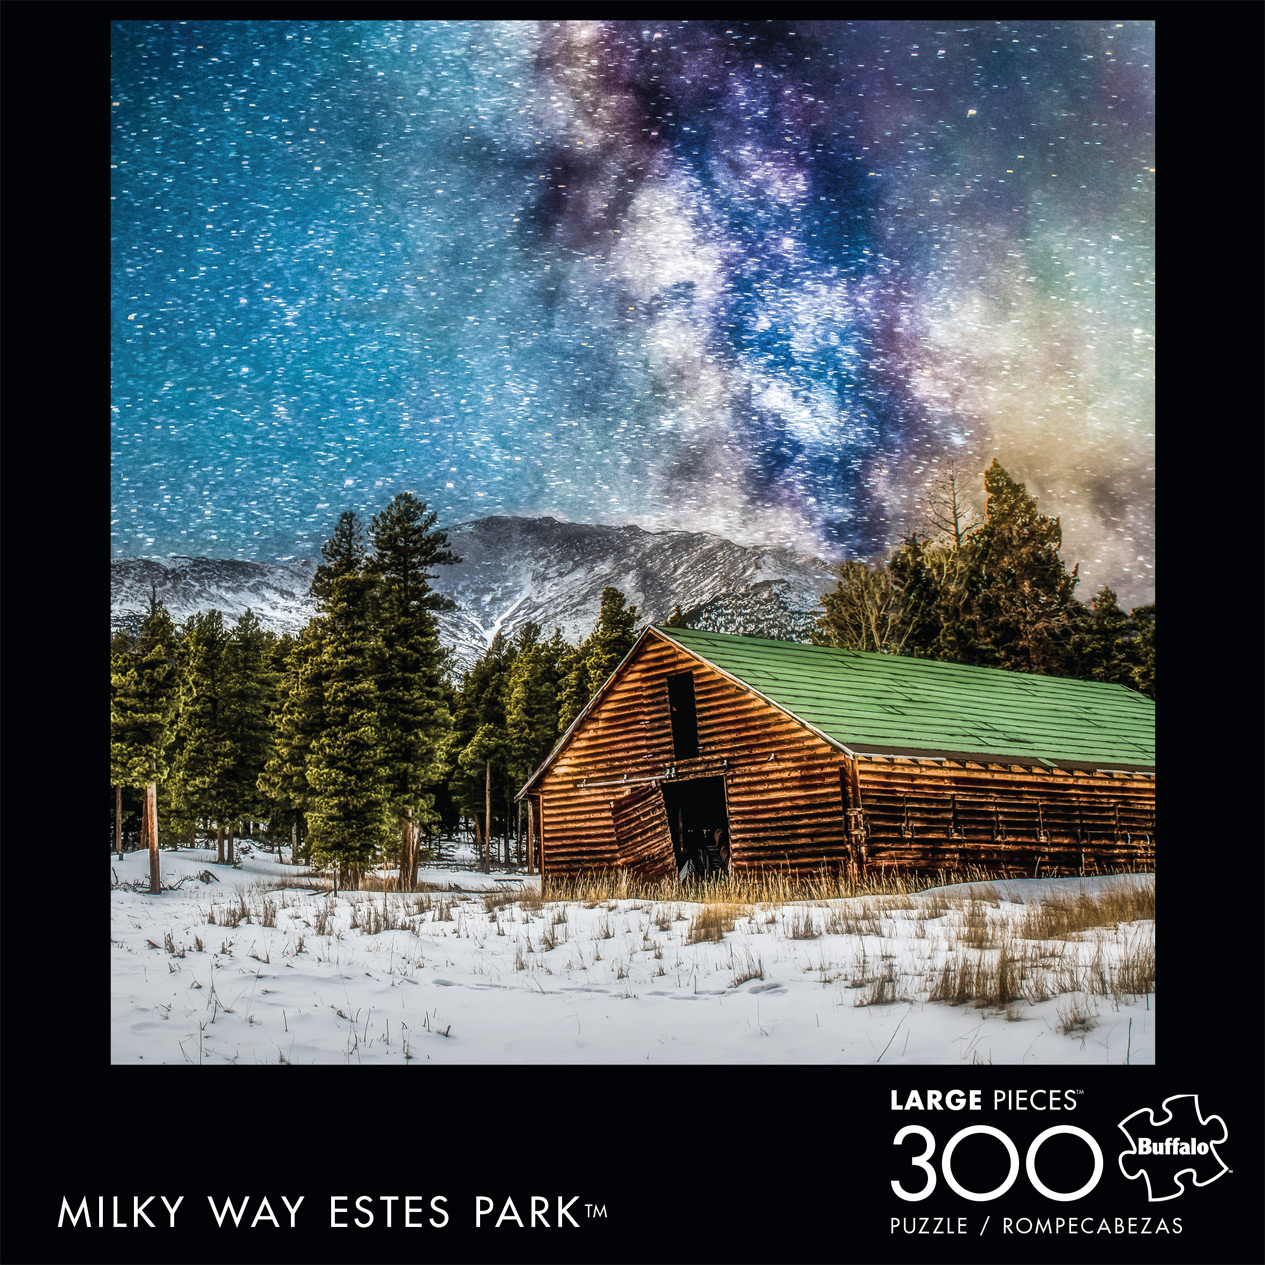 Milky Way Estes Park